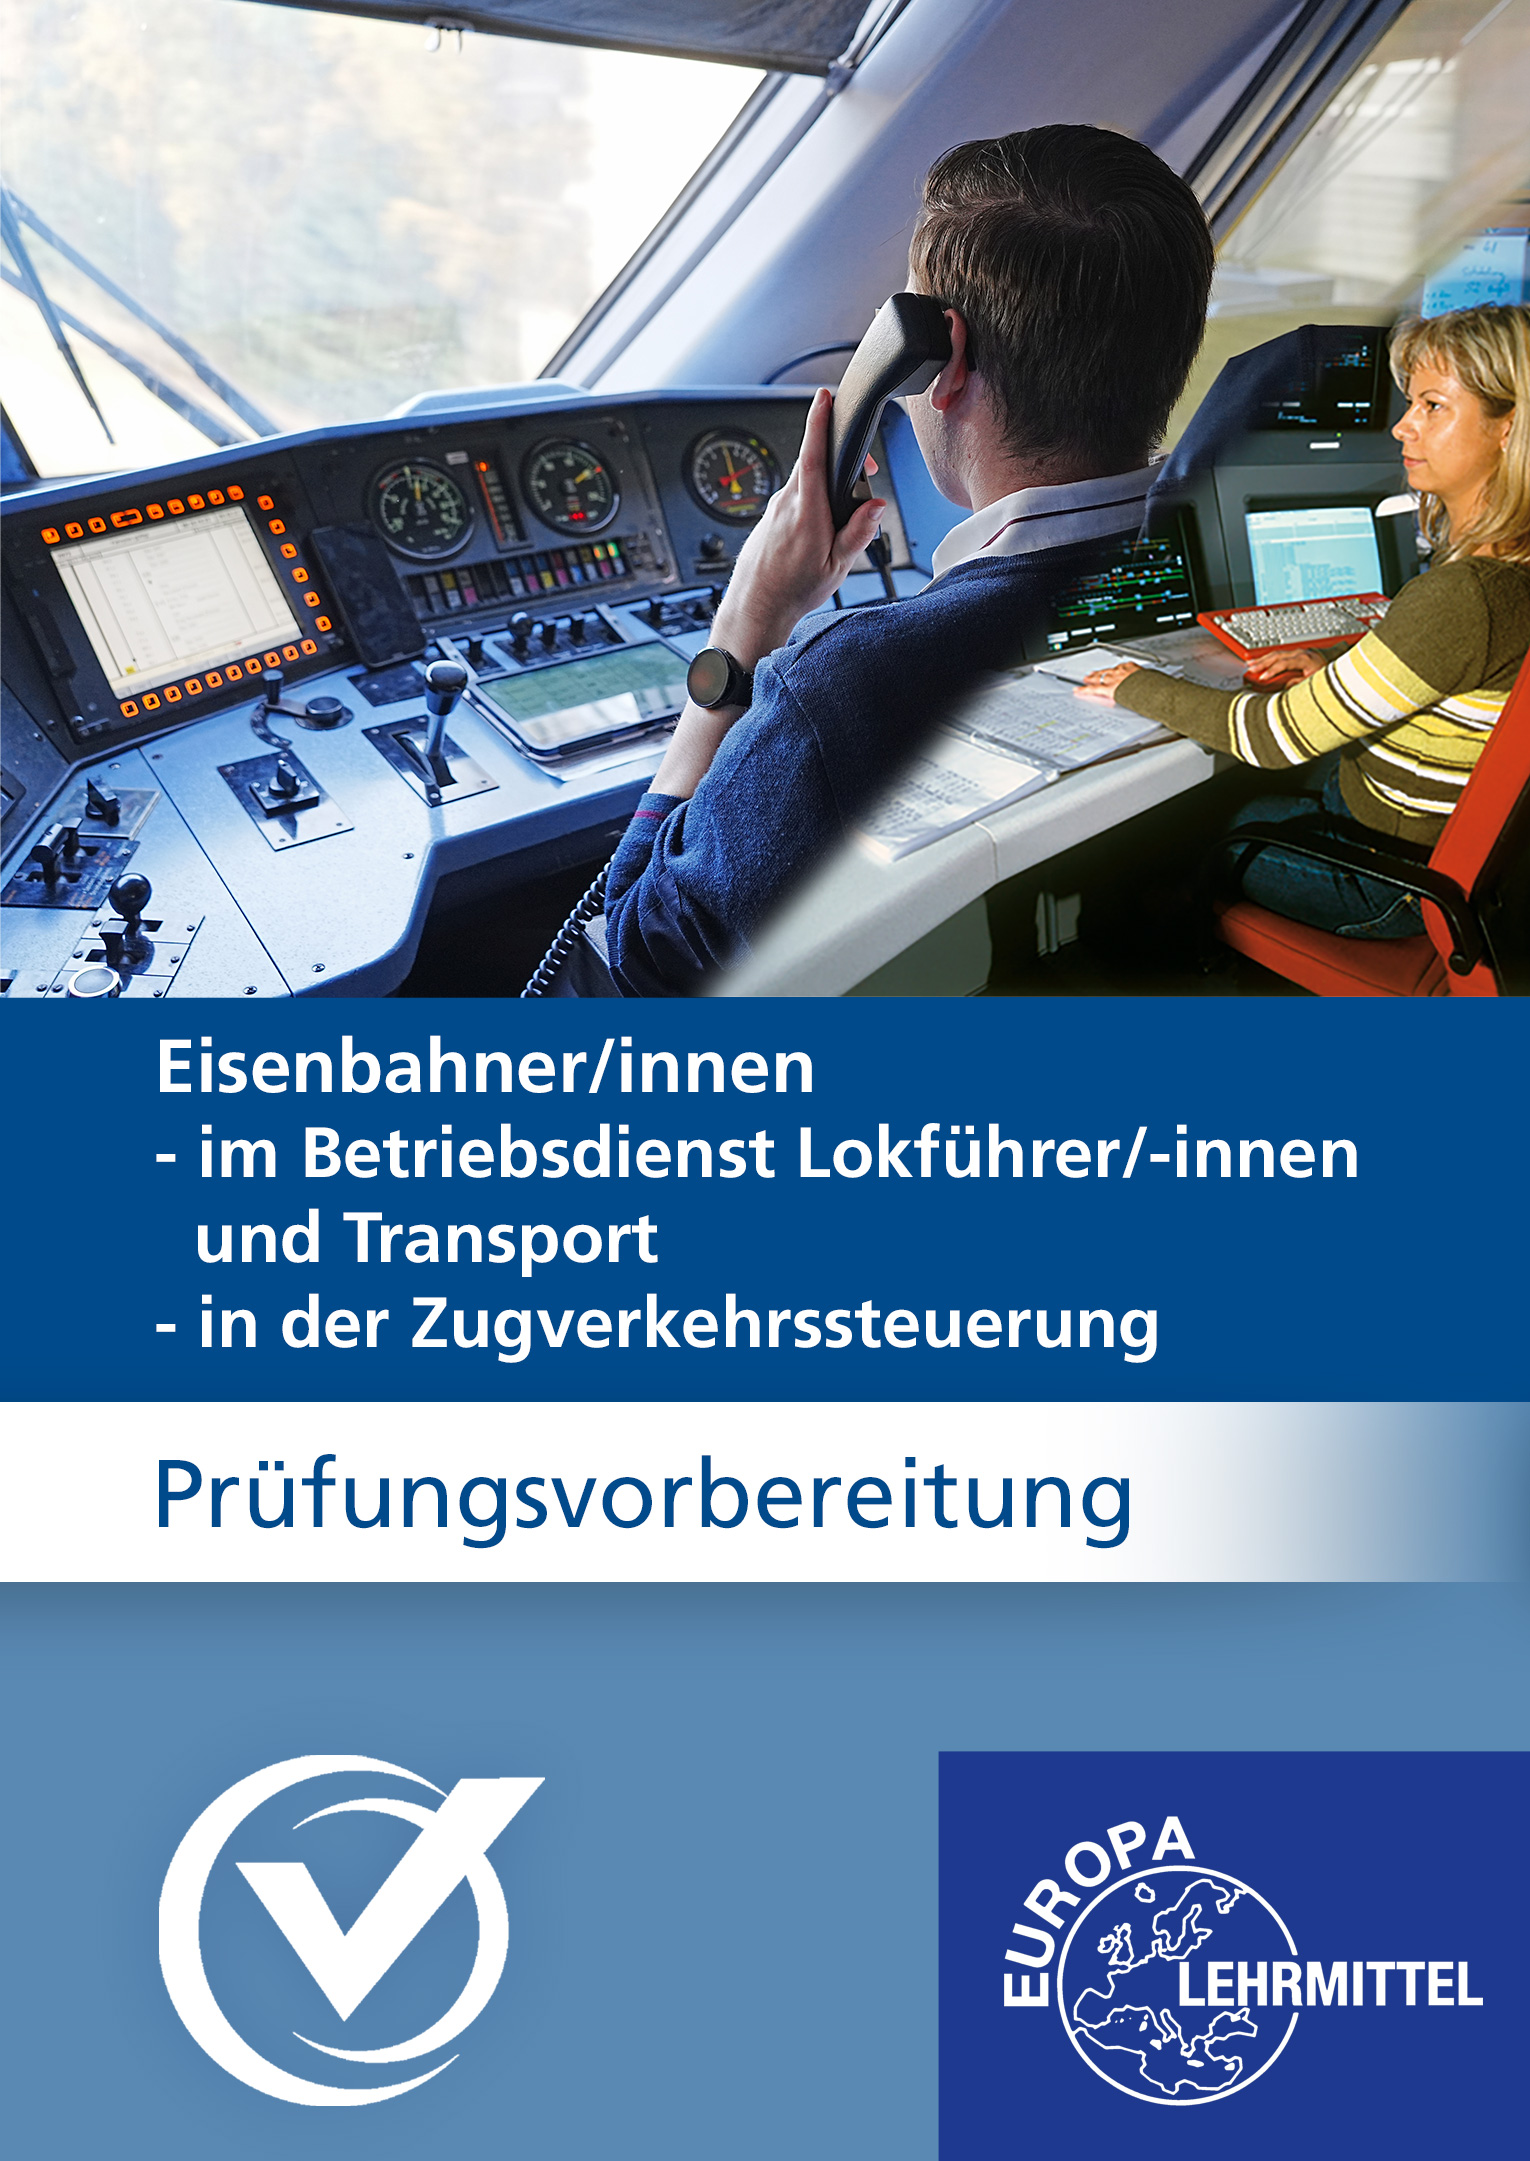 Eisenbahner/-in im Betriebsdienst bzw. in der Zugverkehrssteuerung